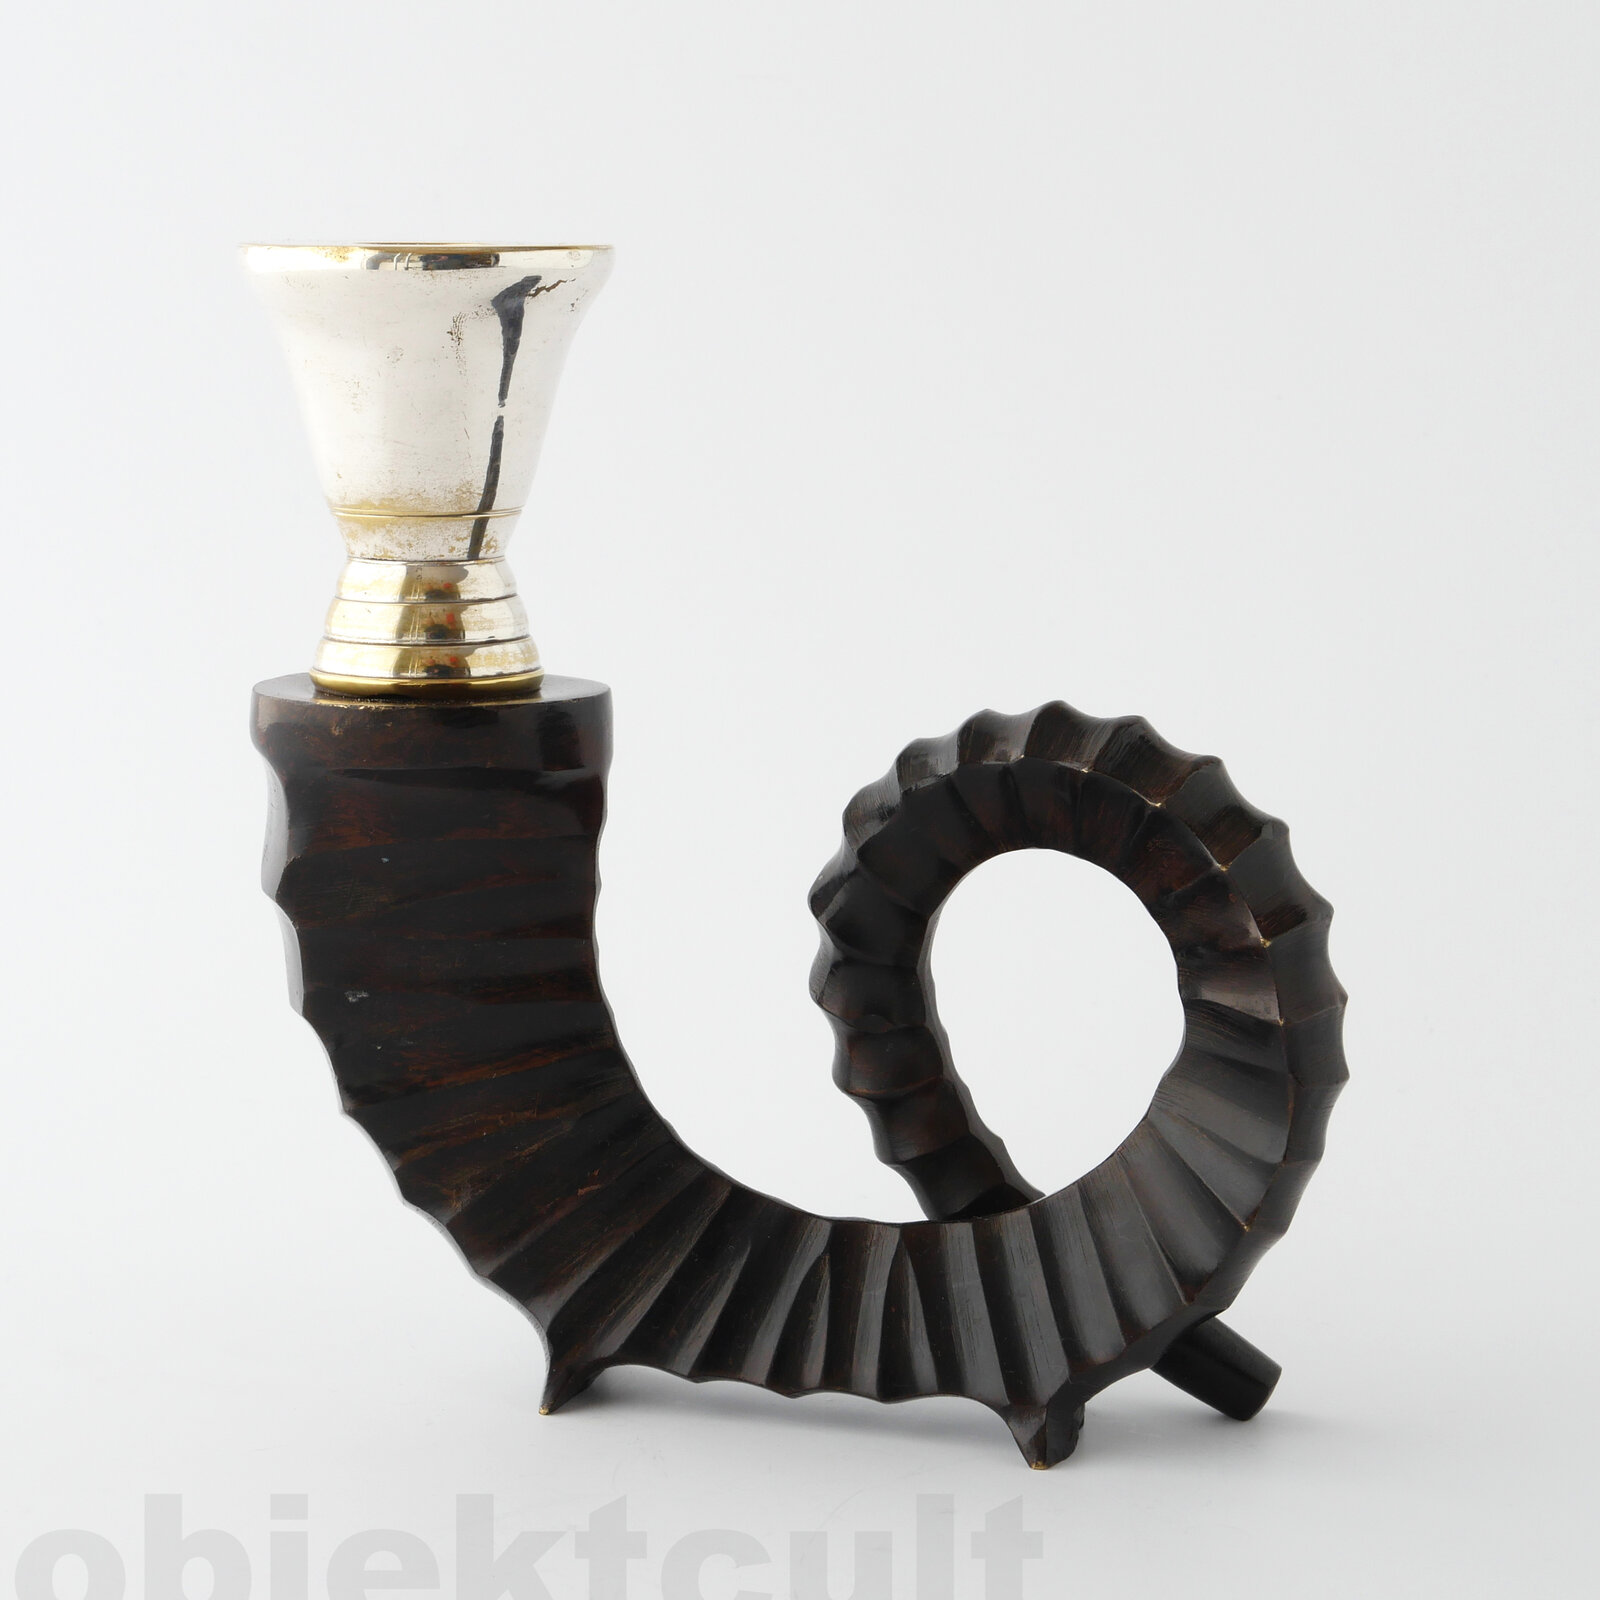 candlestick, Kerzenleuchter, manufacturer: Maison Chapman